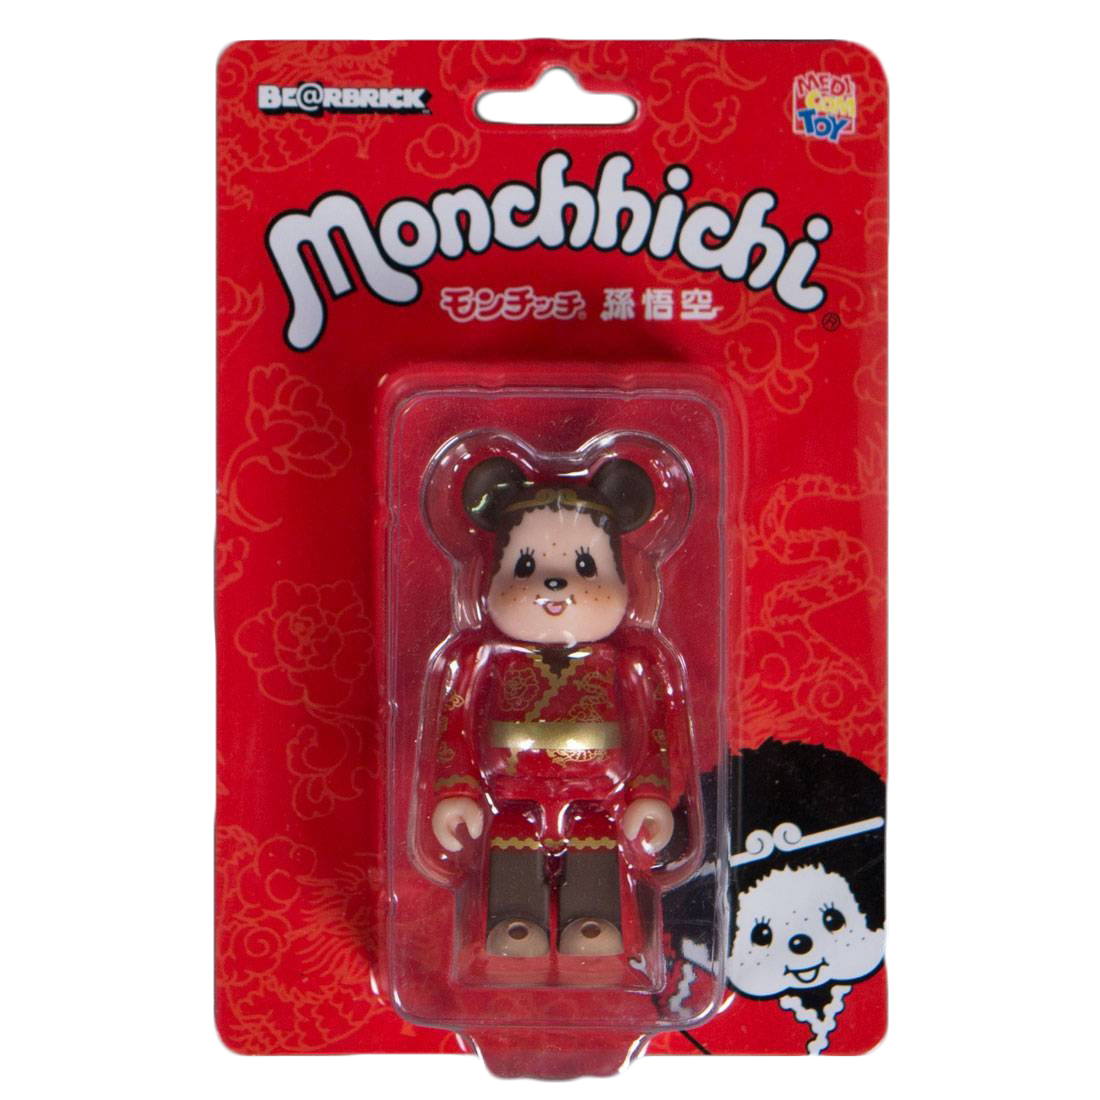 Medicom 2017 Be@rbrick Songoku Monchhichi 100% Monchichi Monkey King Bearbrick 